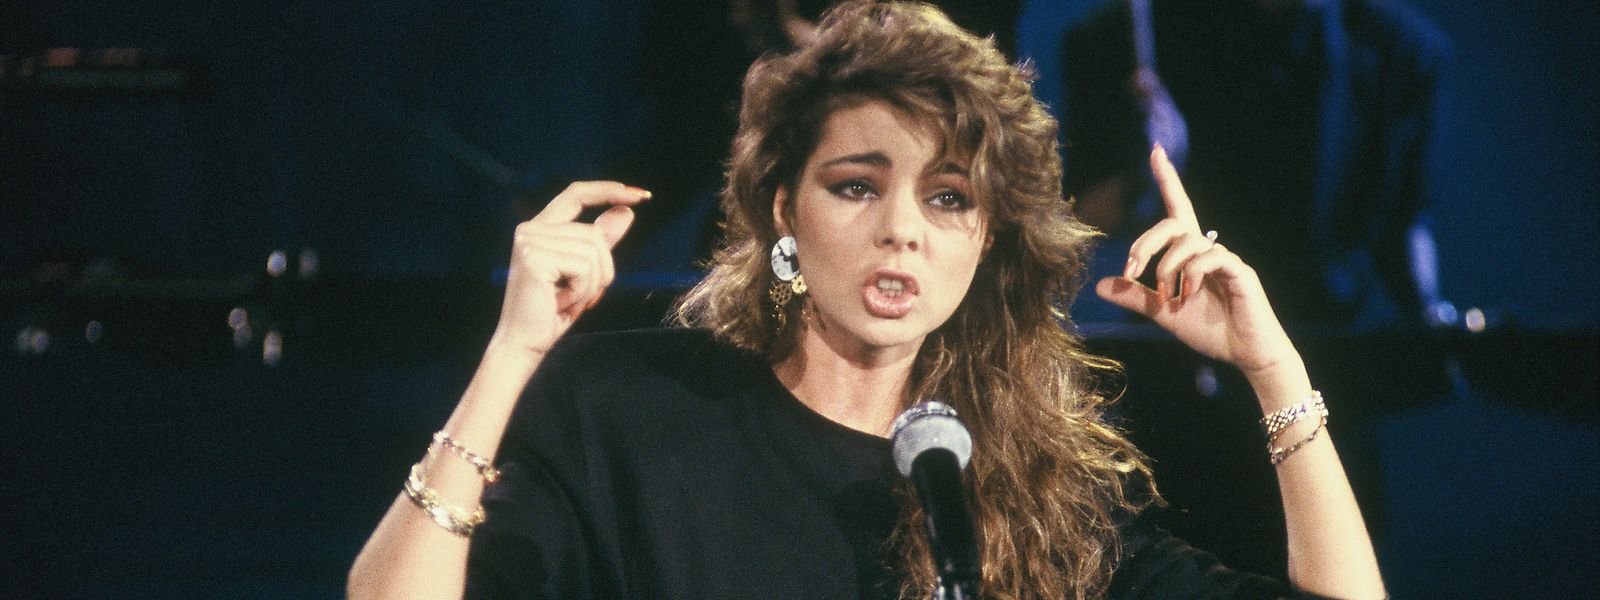 Sandra bei einem Auftritt im Jahre 1990.